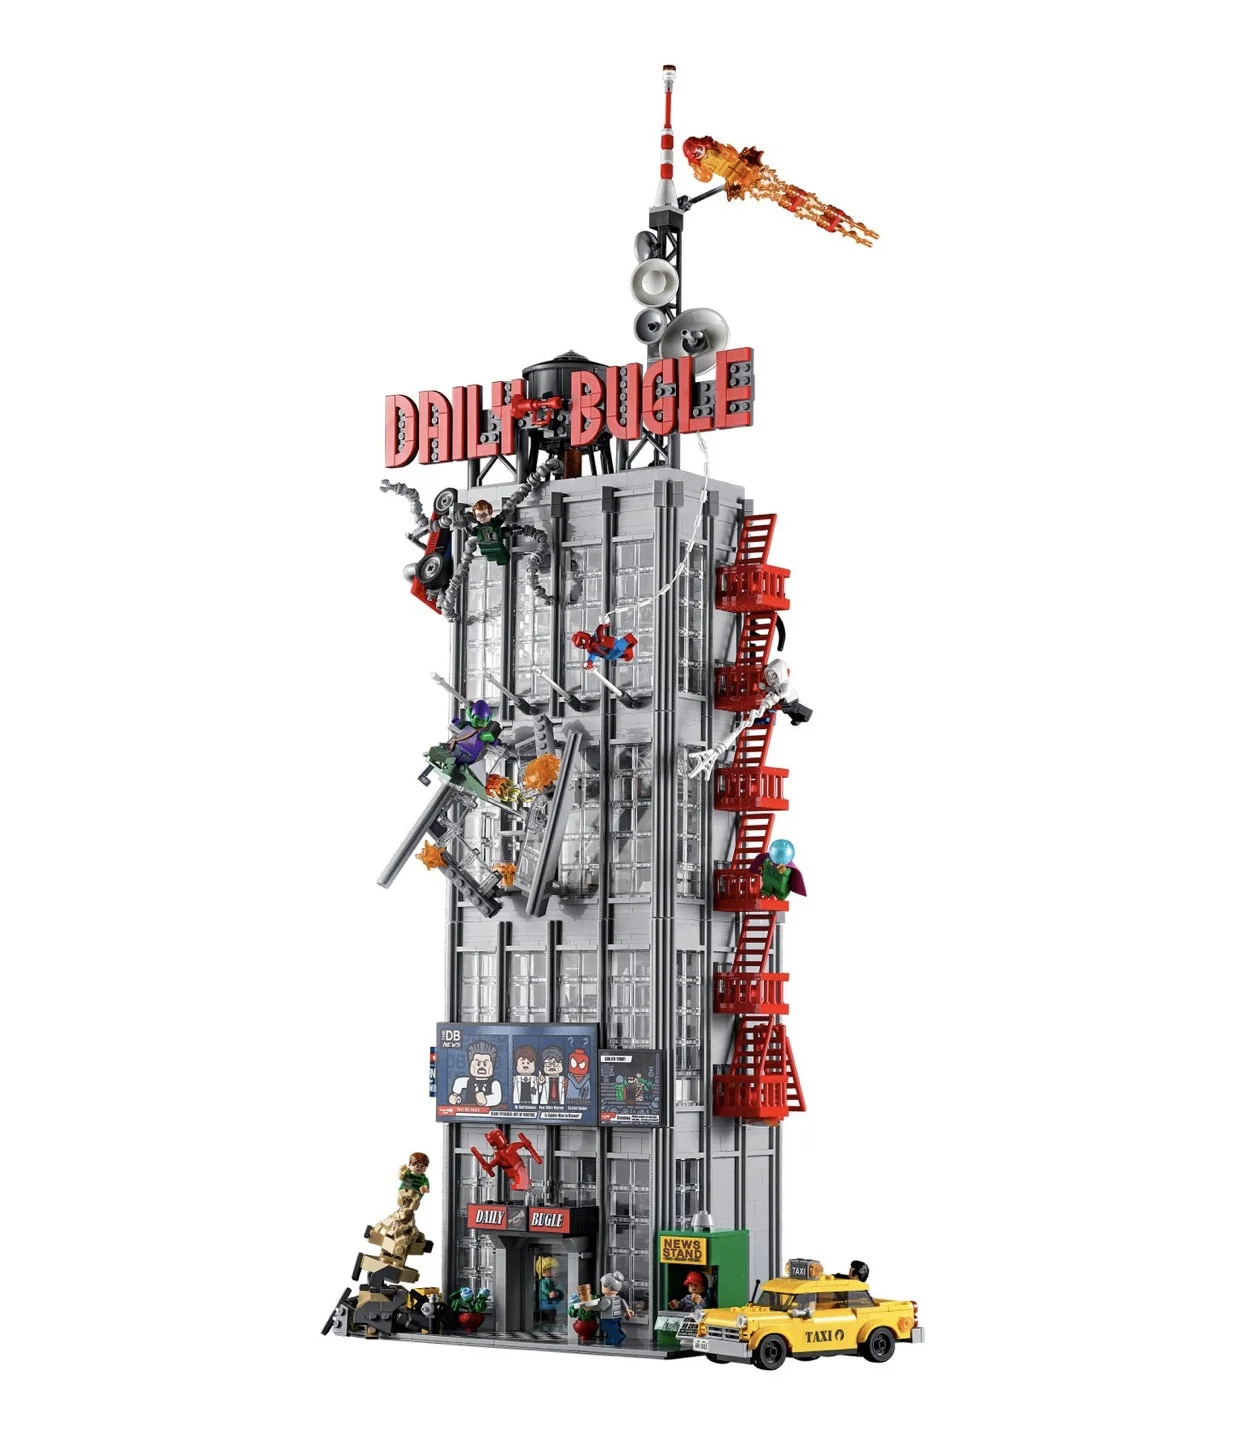 LEGO выпустит набор со зданием The Daily Bugle из «Человека-паука». 3772 детали! - фото 2